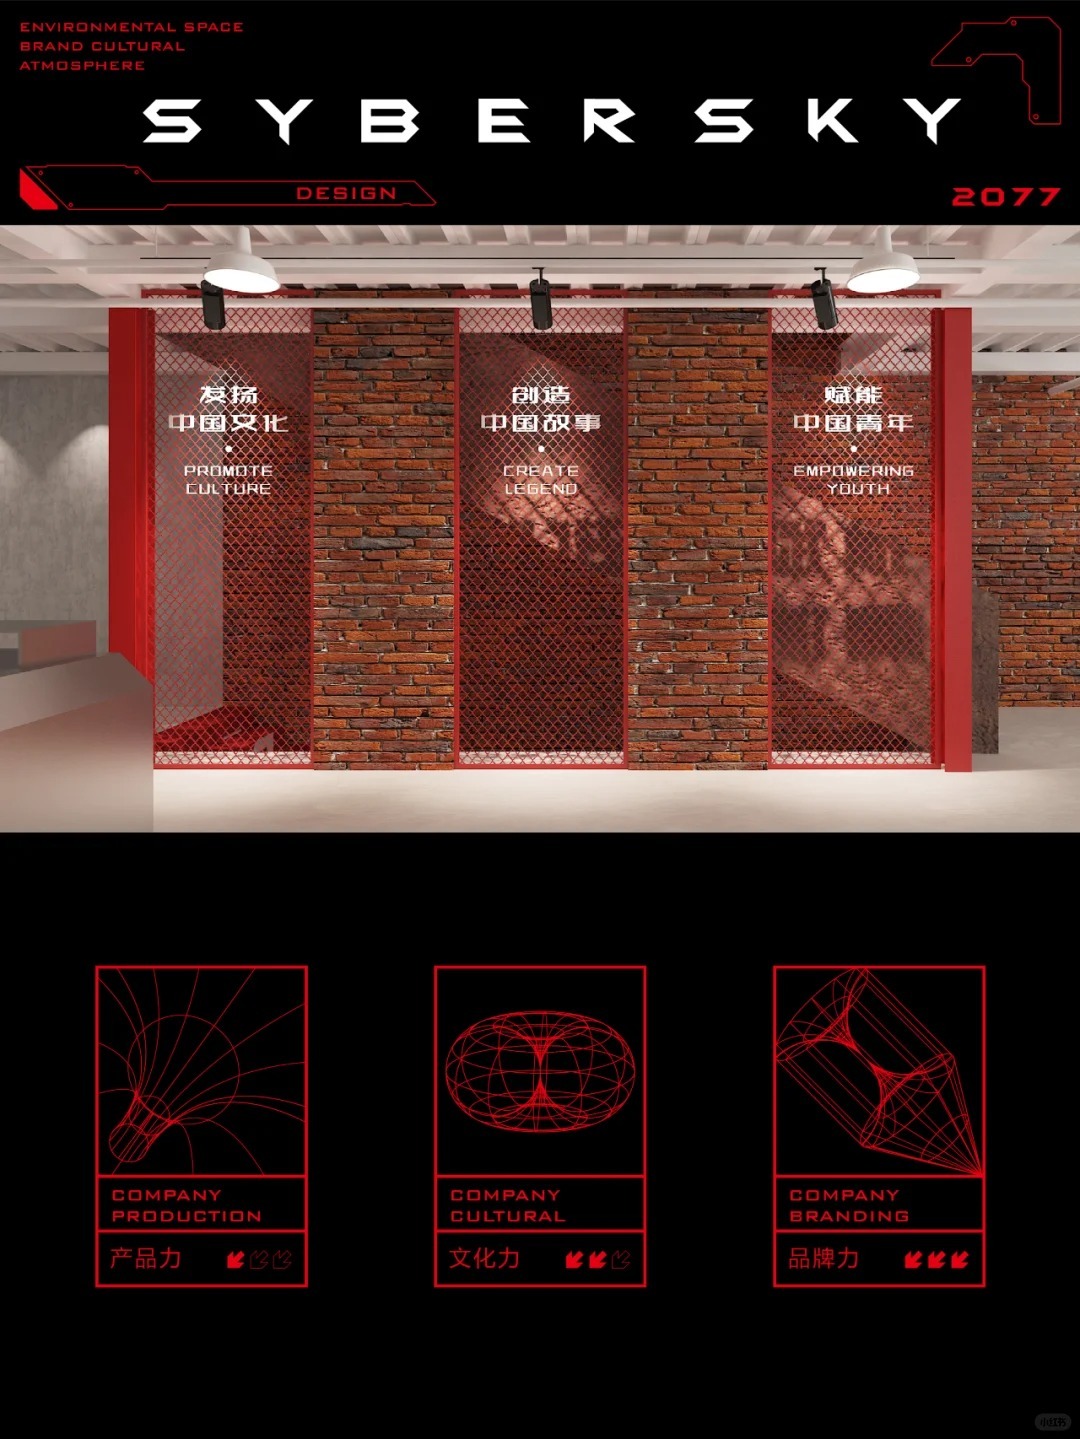 赛博天空2077-空间品牌文化氛围设计图3